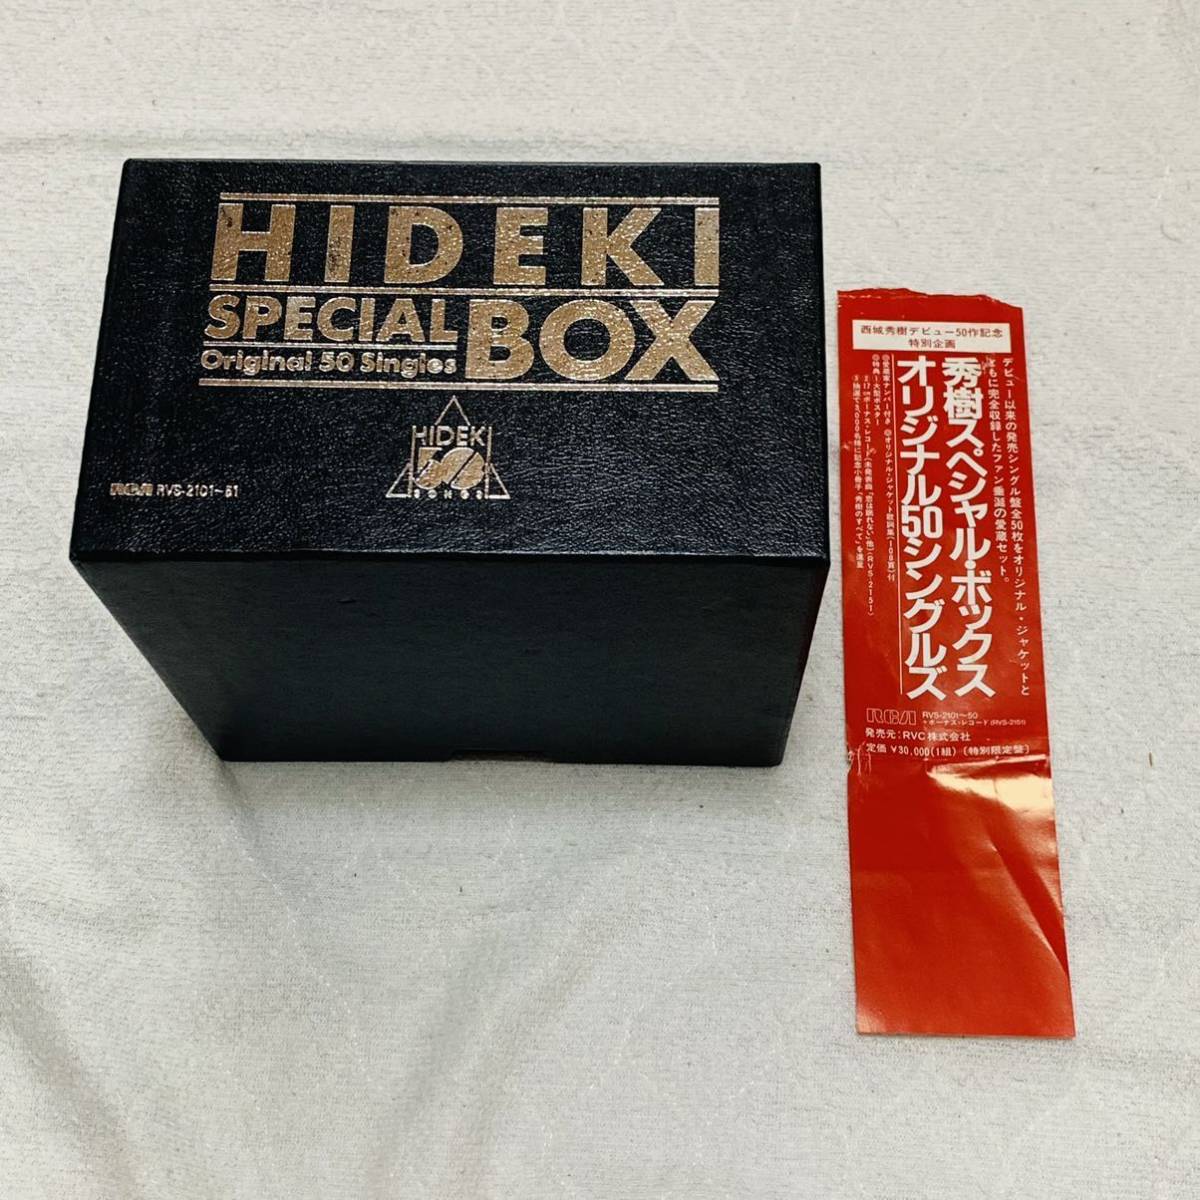 西城秀樹 秀樹スペシャルボックス オリジナル50シングルズ-